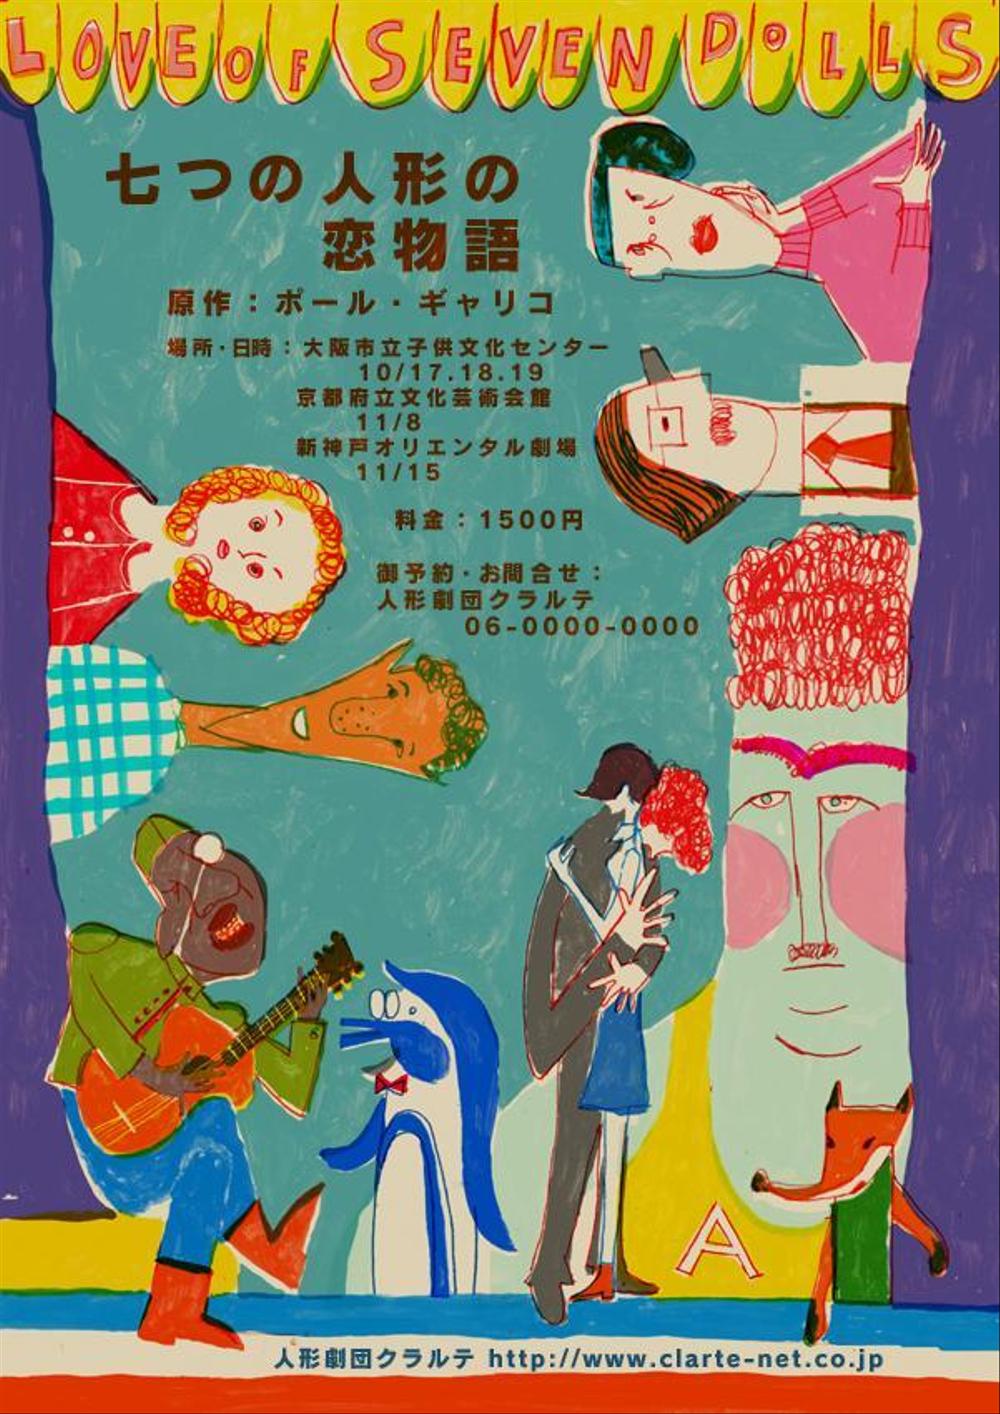 人形劇団クラルテ公演・大人のための人形劇『七つの人形の恋物語』チラシ及びポスターのためのイラスト